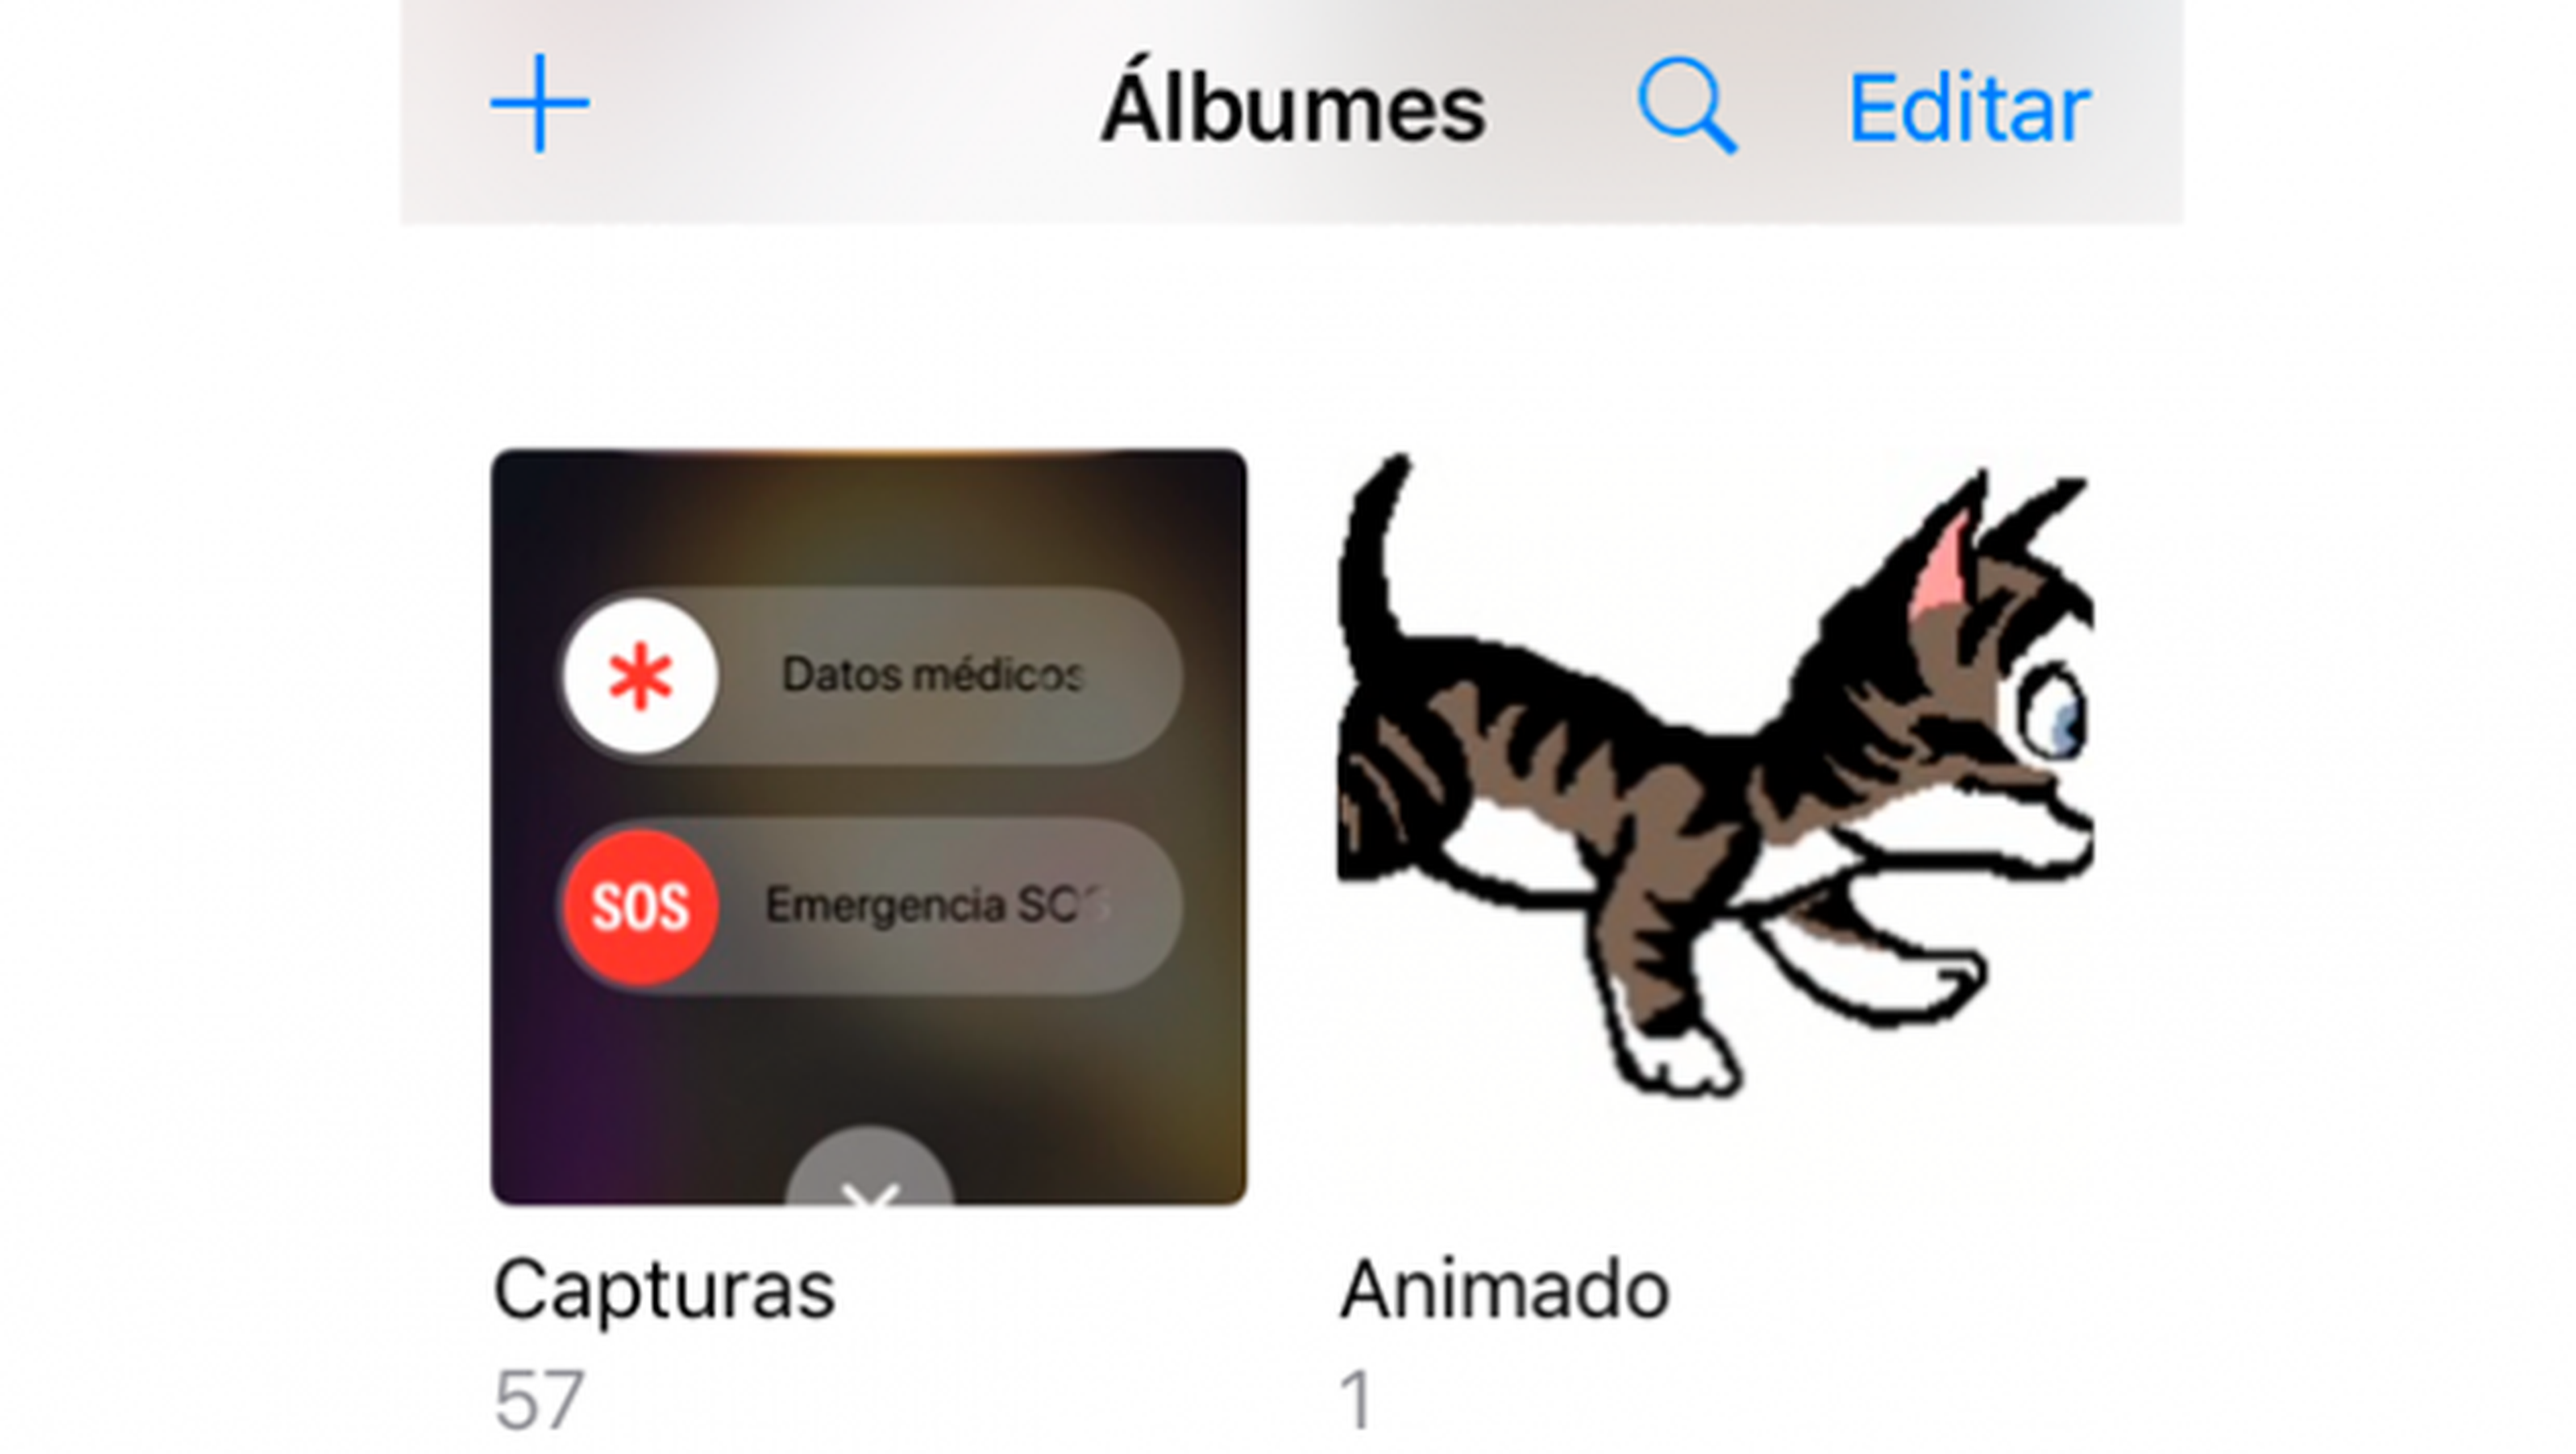 Albúm GIFs en galería de Fotos iOS 11